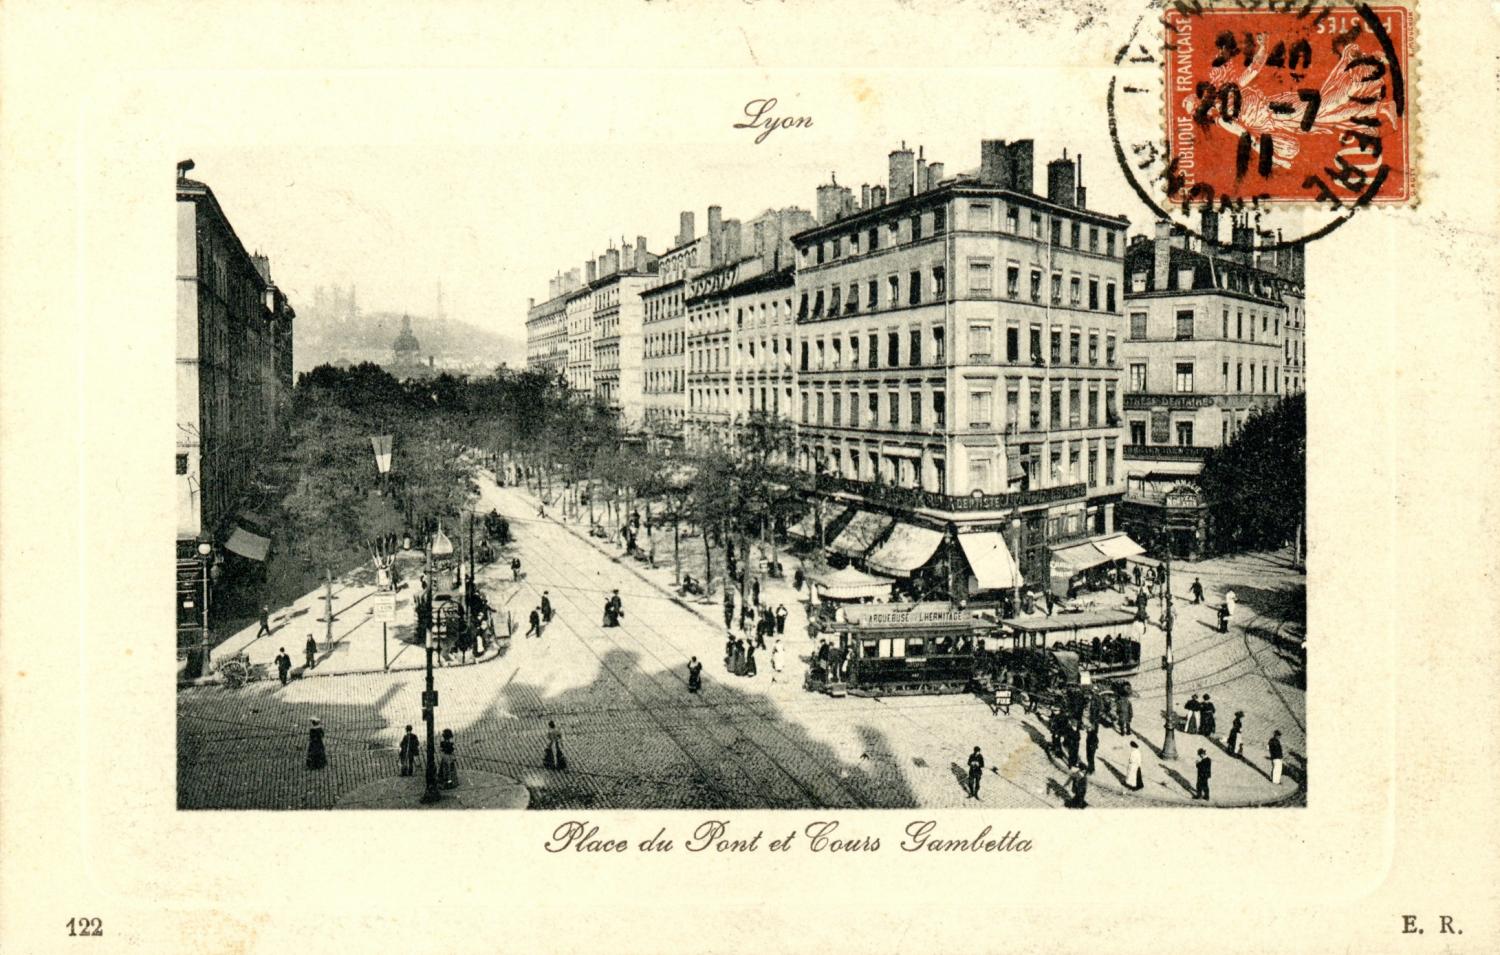 Lyon : Place du Pont et Cours Gambetta.